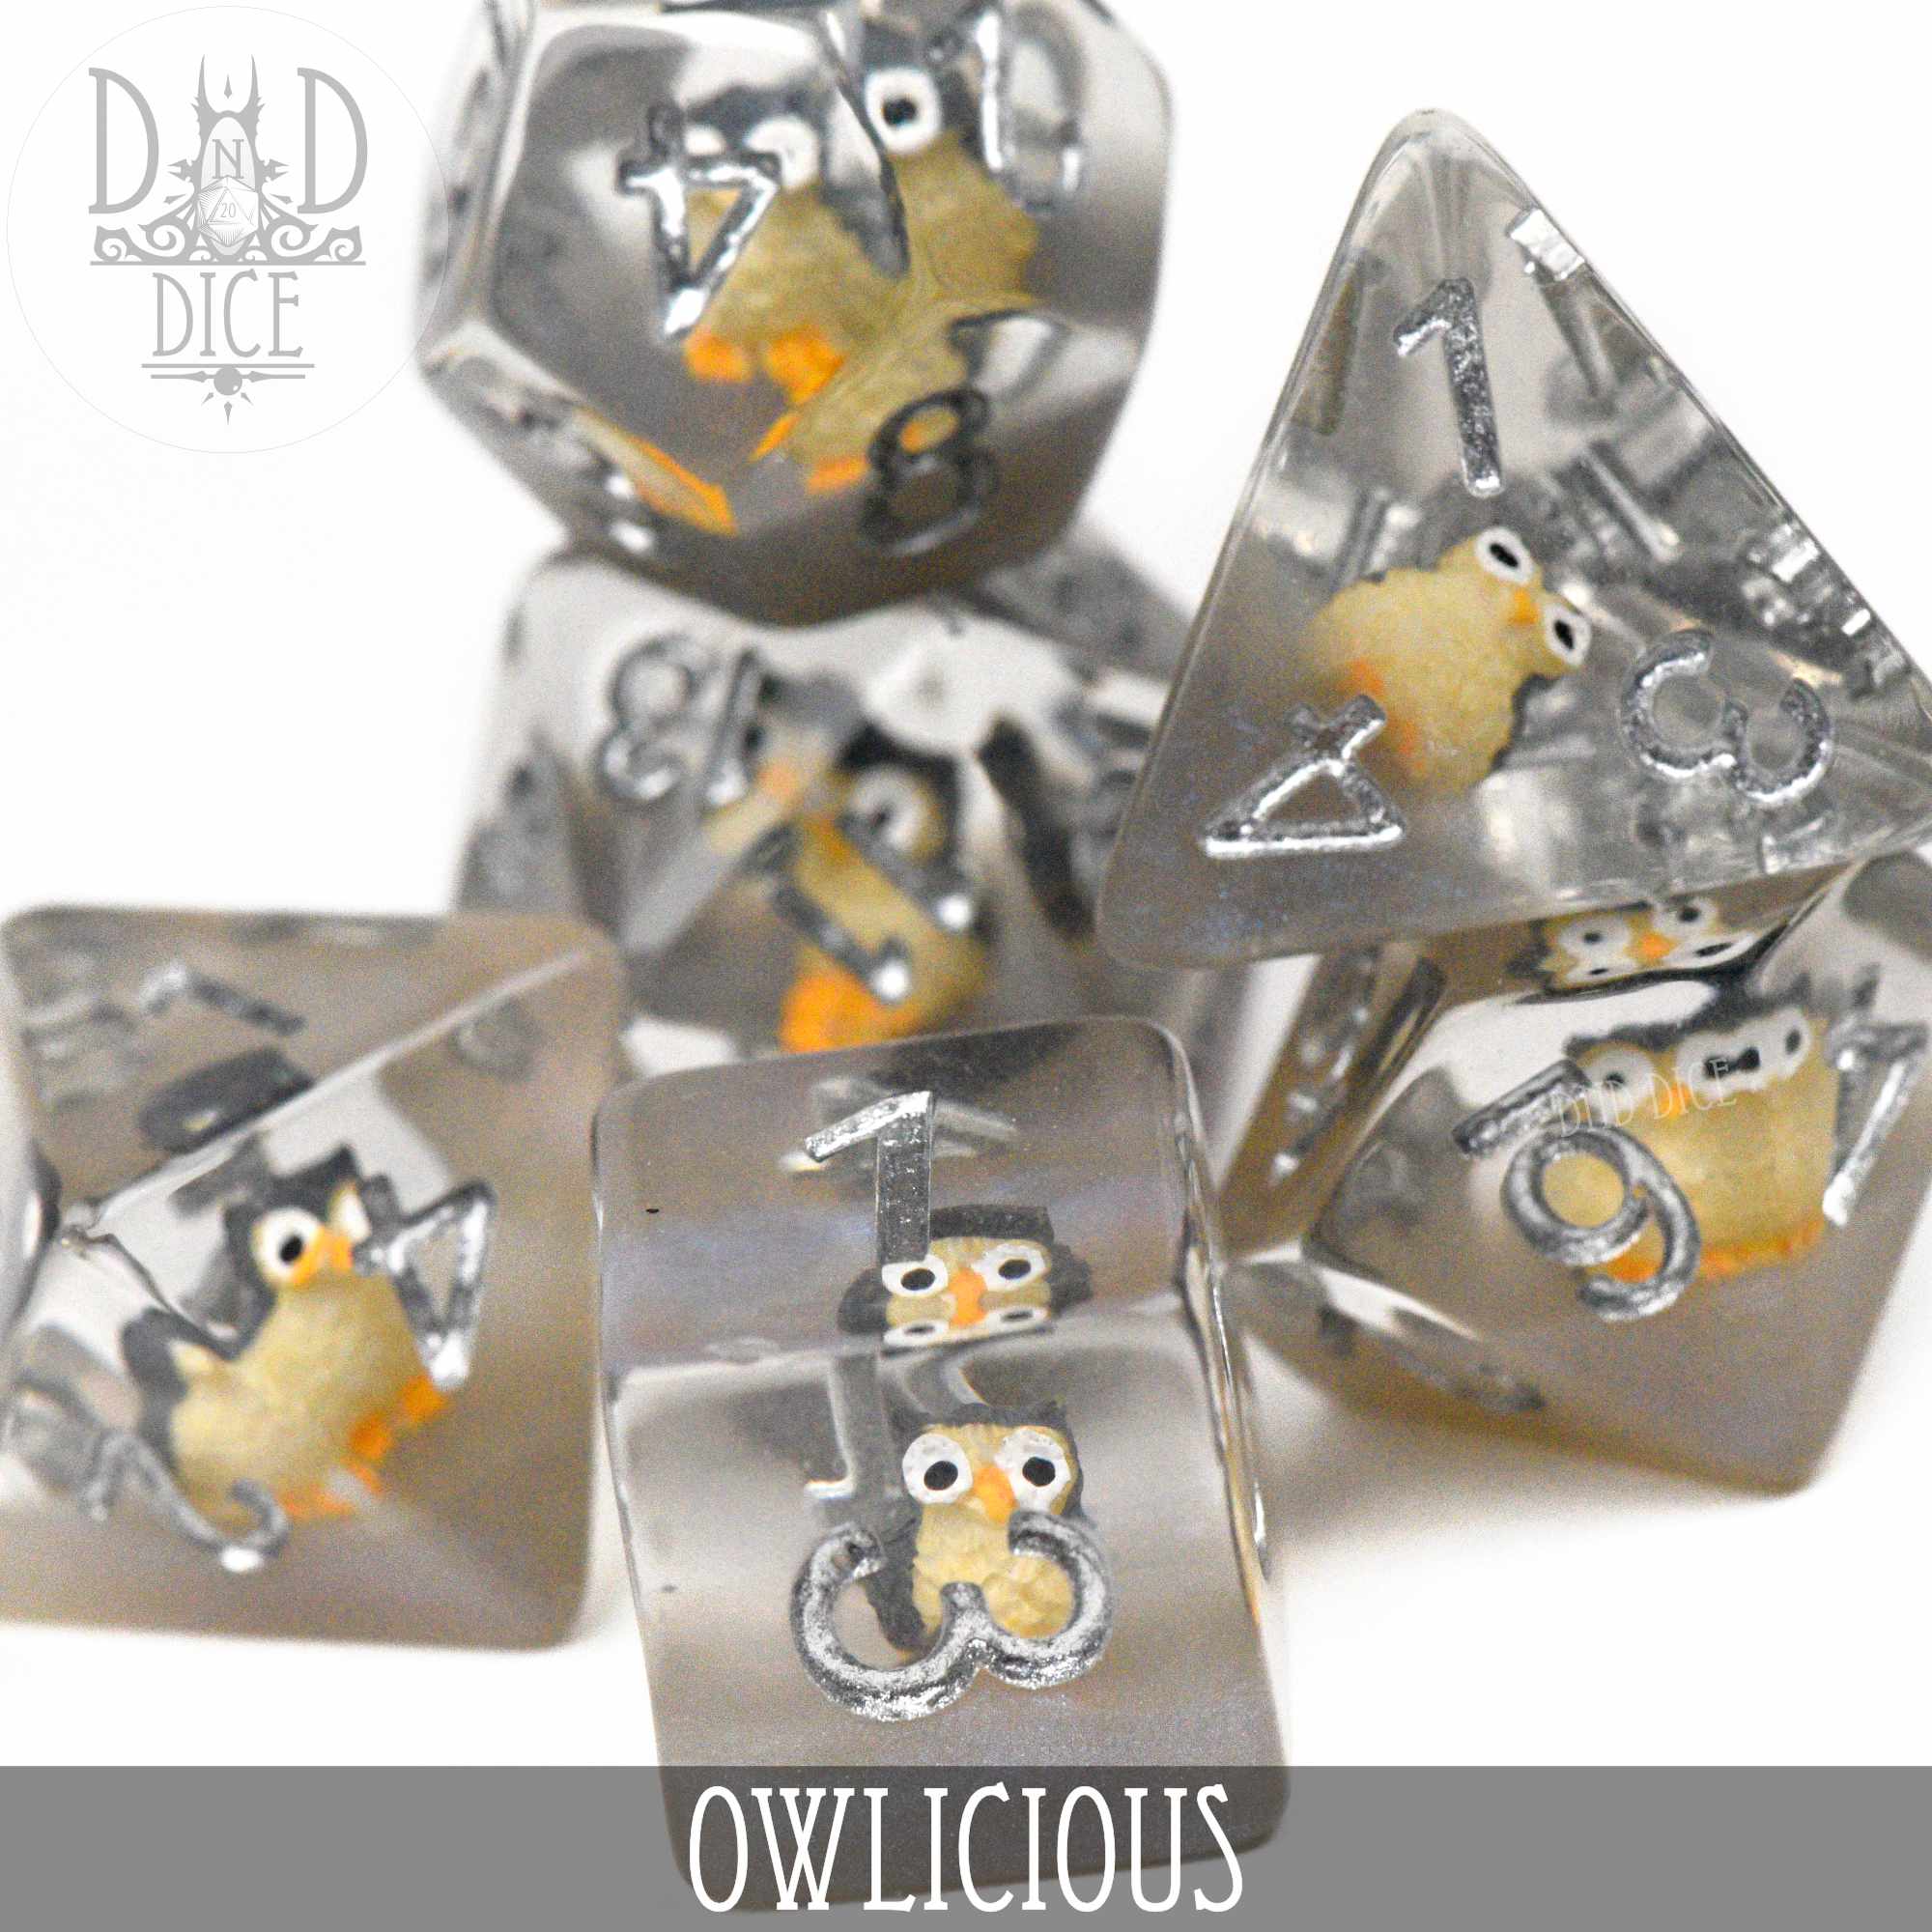 Owlicious Dice Set